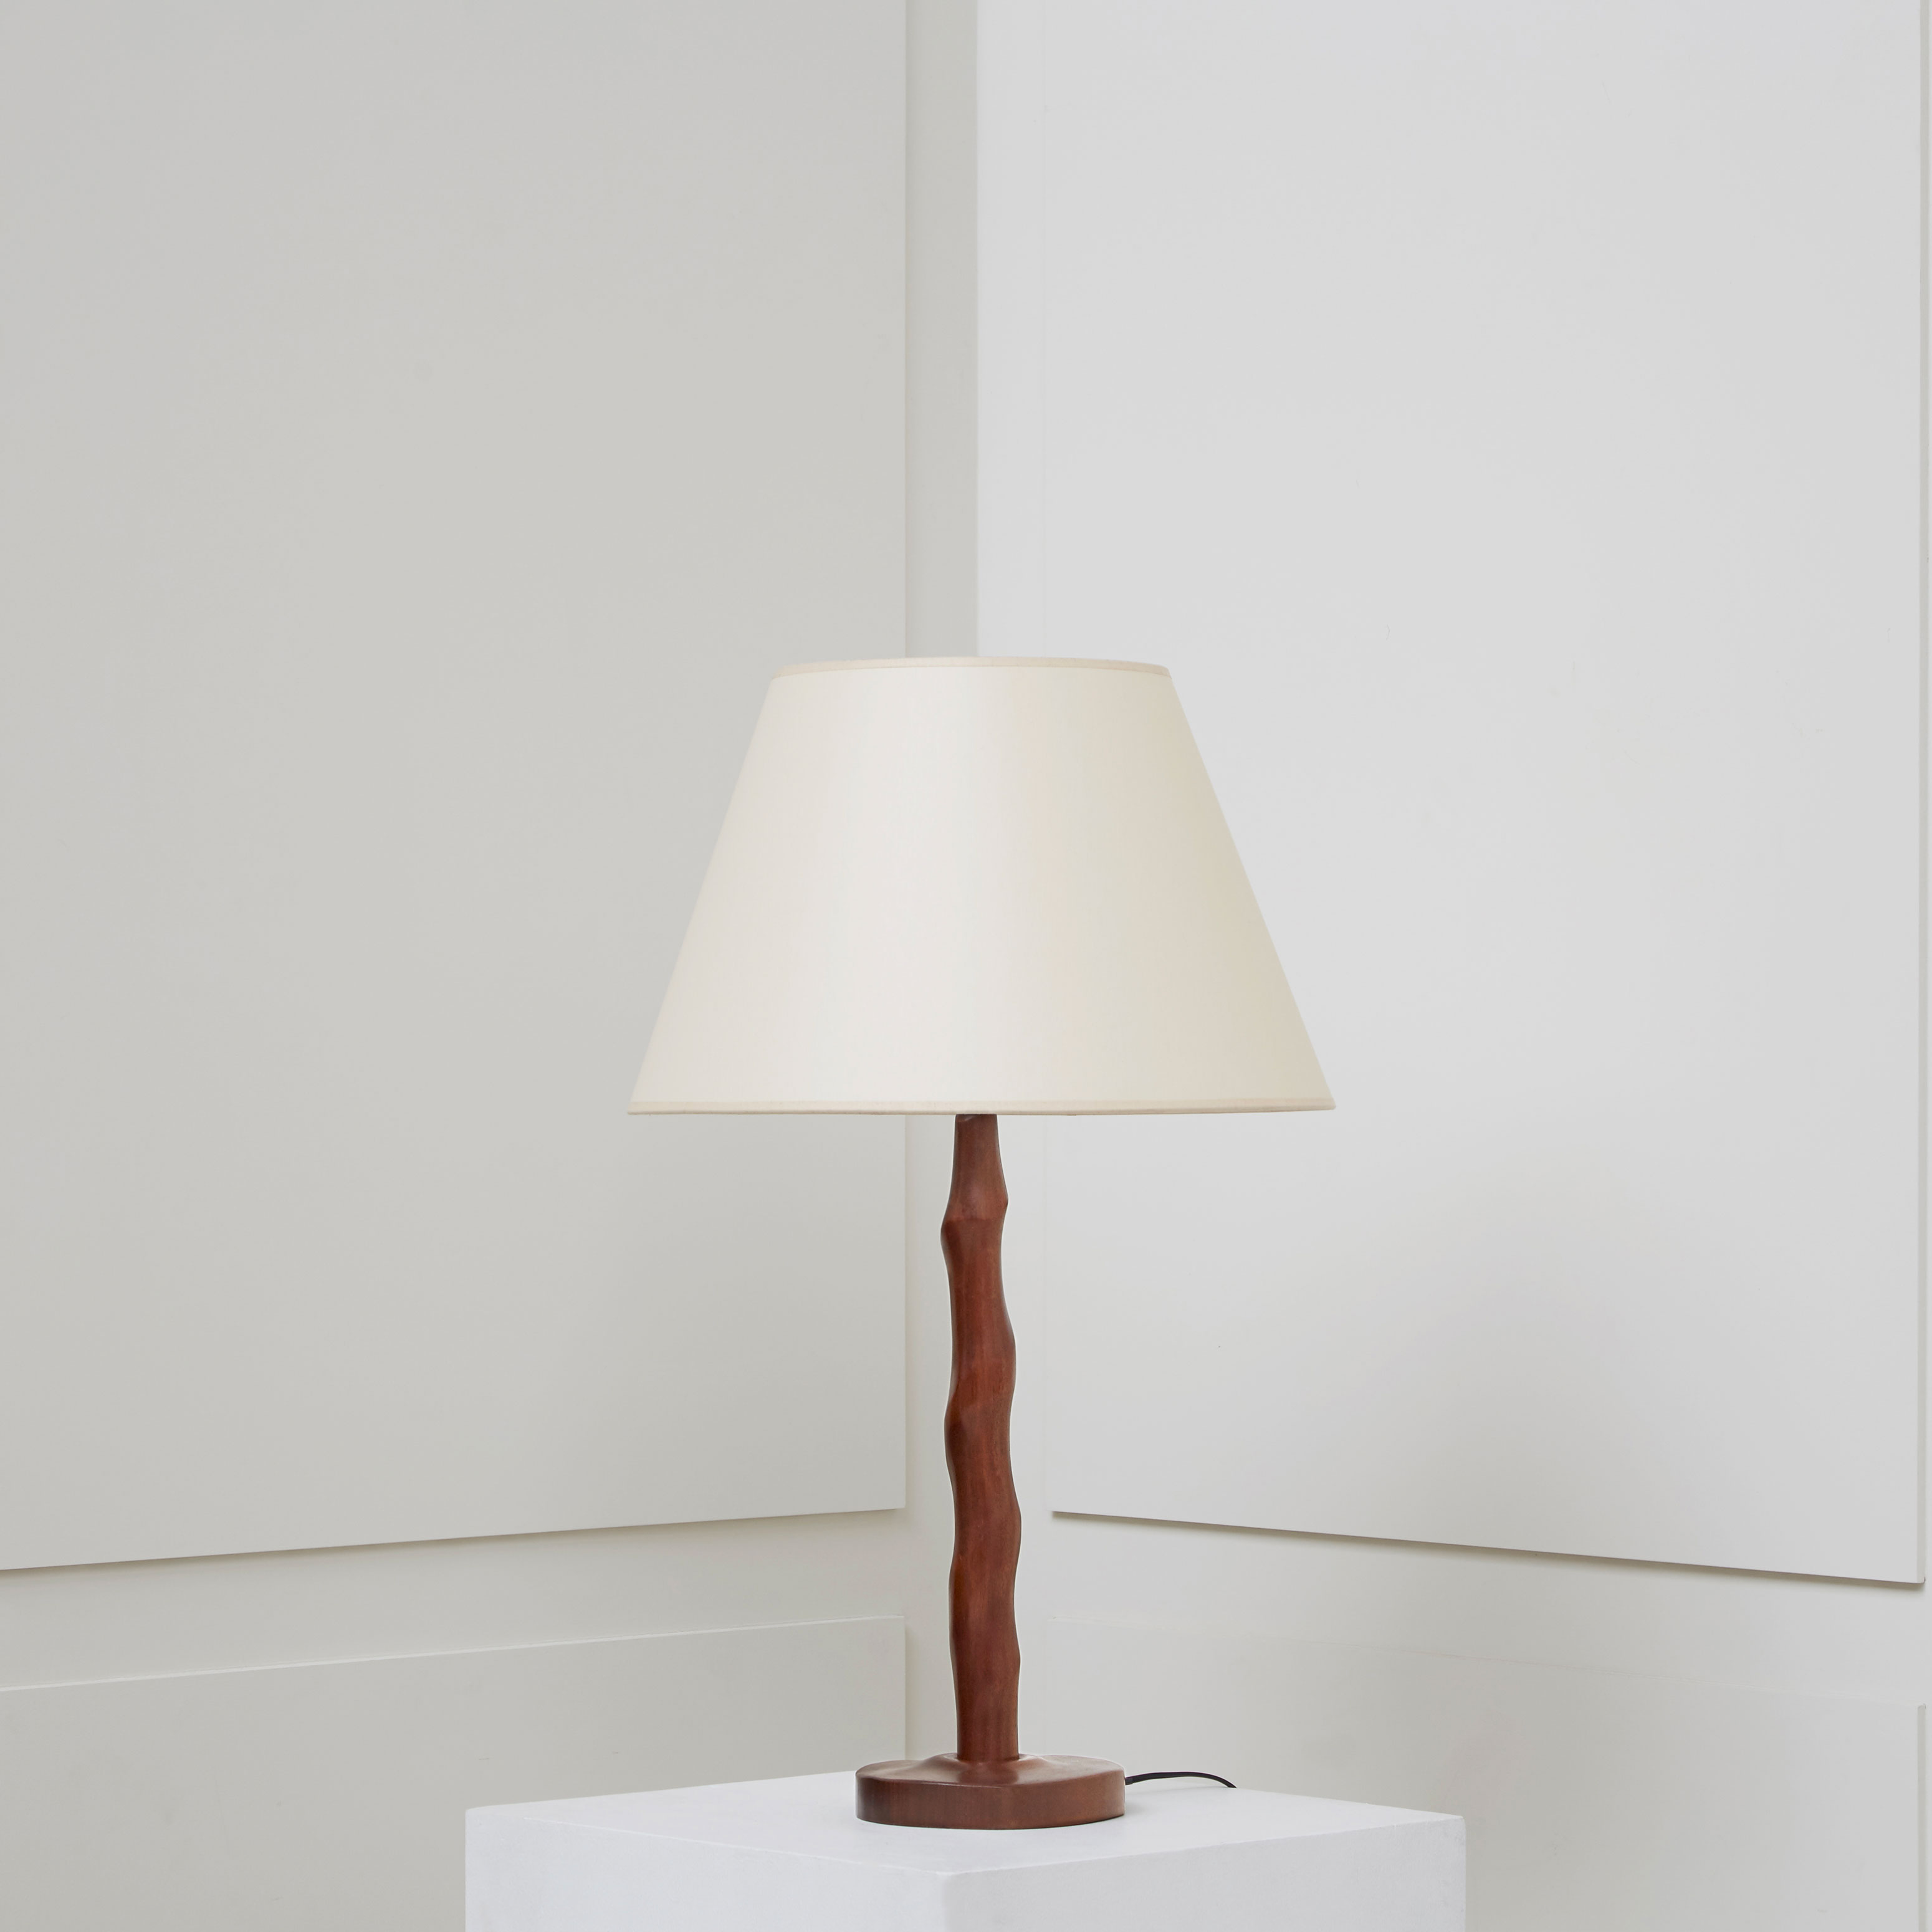 Alexandre Noll, Mahogany lamp, vue 01